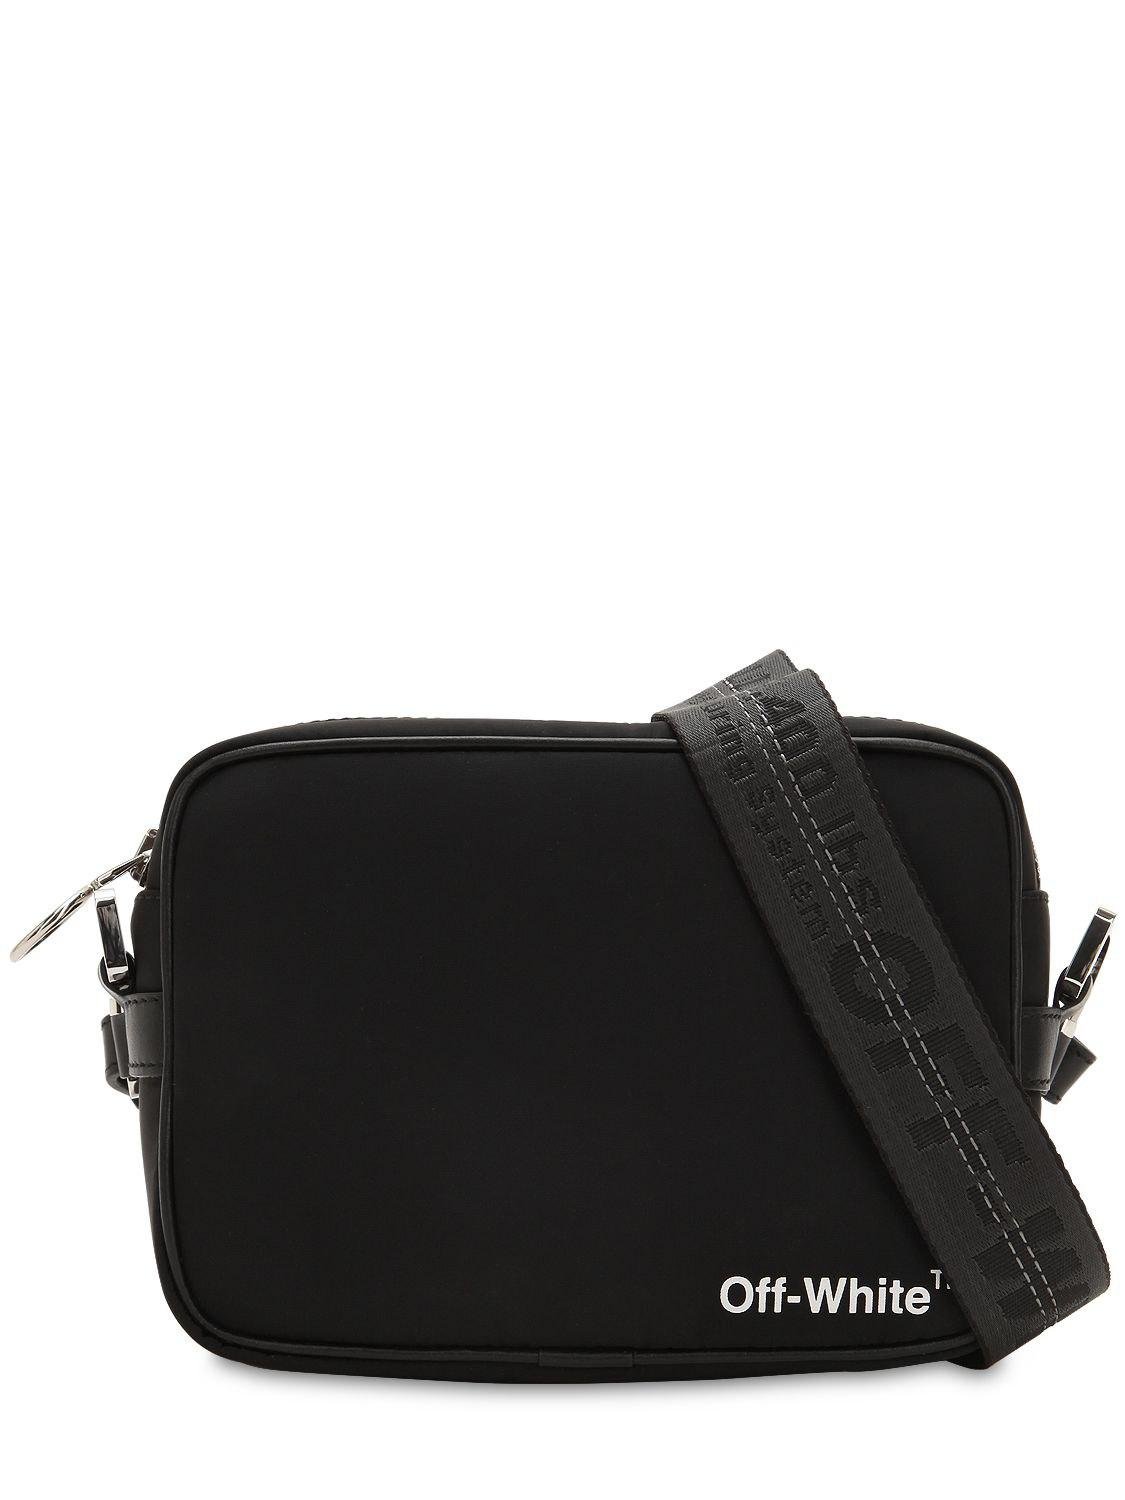 Off-White c/o Virgil Abloh Nylon Crossbody Bag W/ Webbing in Black for Men